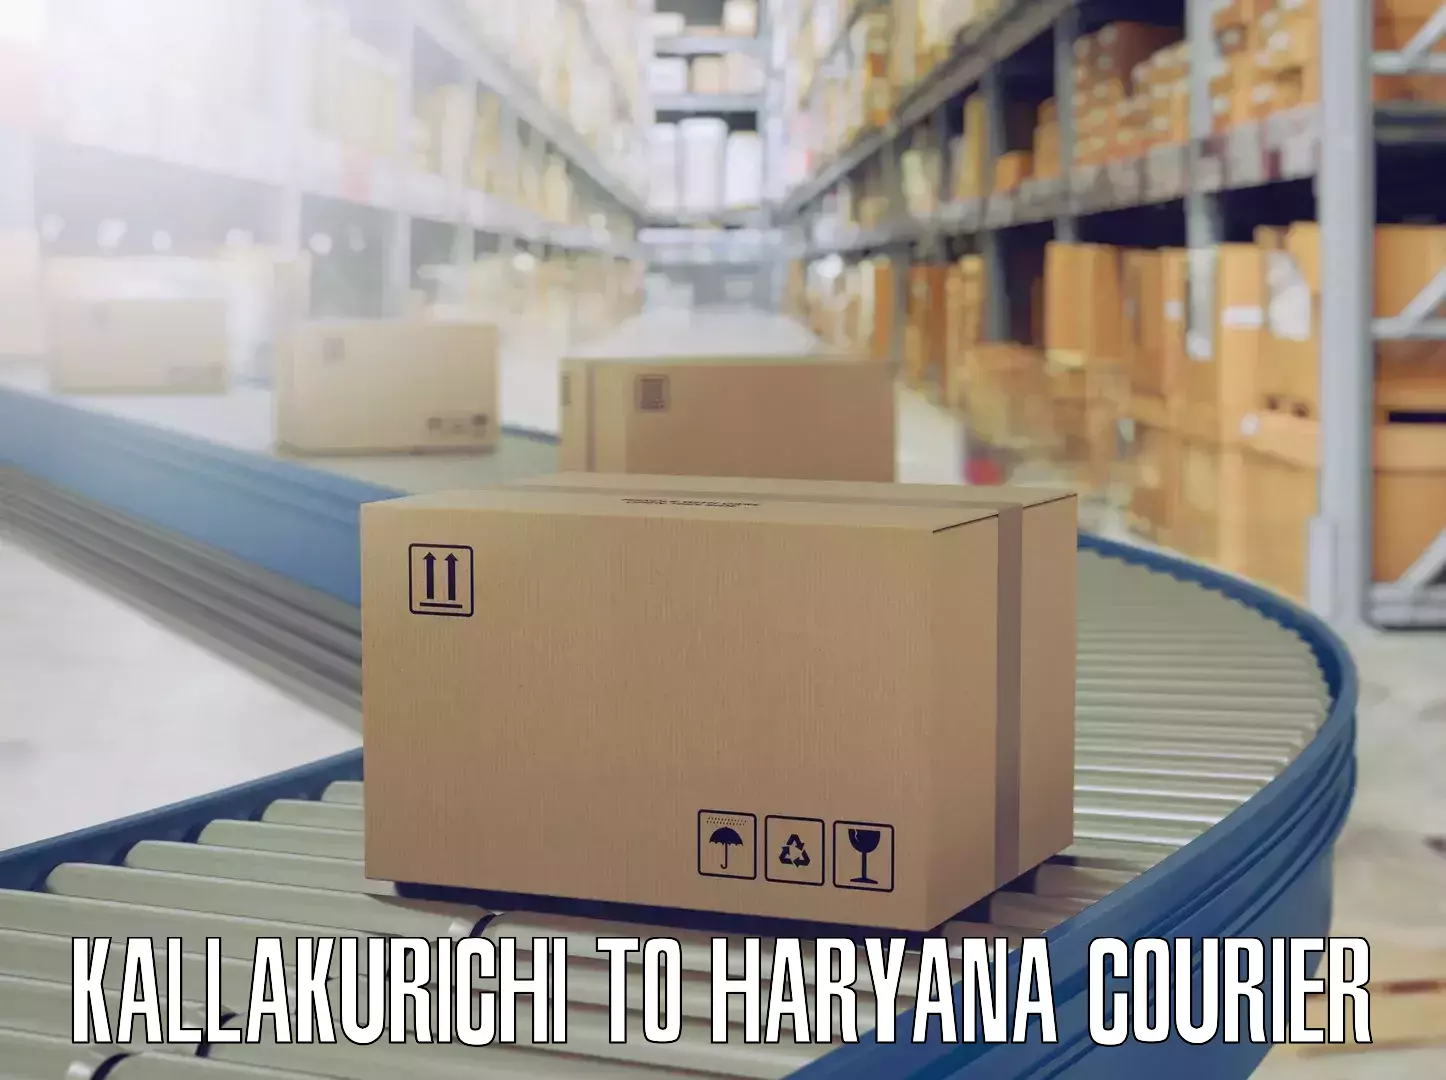 Quality furniture transport Kallakurichi to Haryana